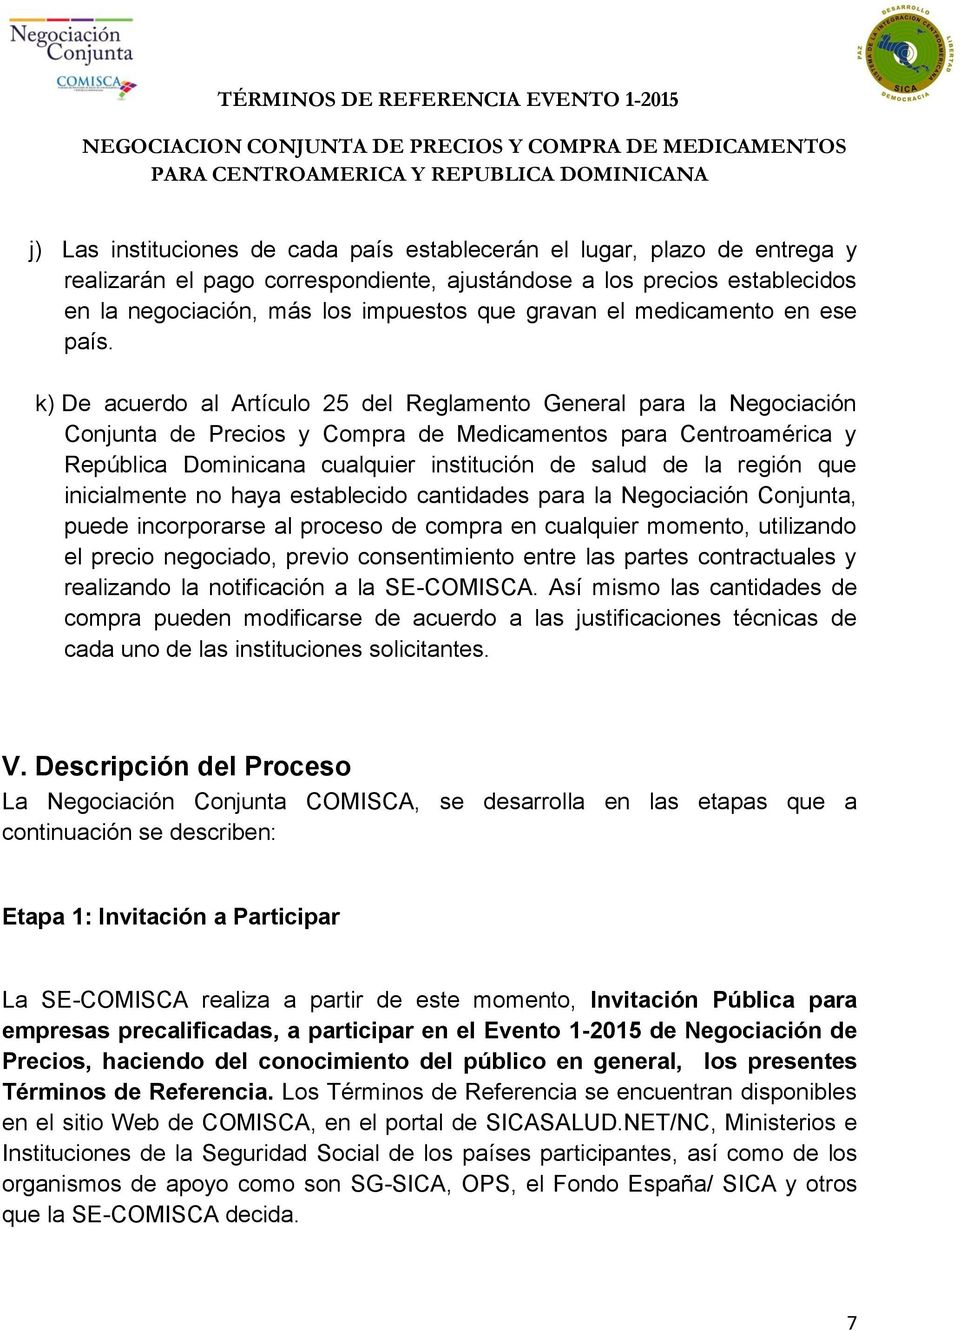 k) De acuerdo al Artículo 25 del Reglamento General para la Negociación Conjunta de Precios y Compra de Medicamentos para Centroamérica y República Dominicana cualquier institución de salud de la